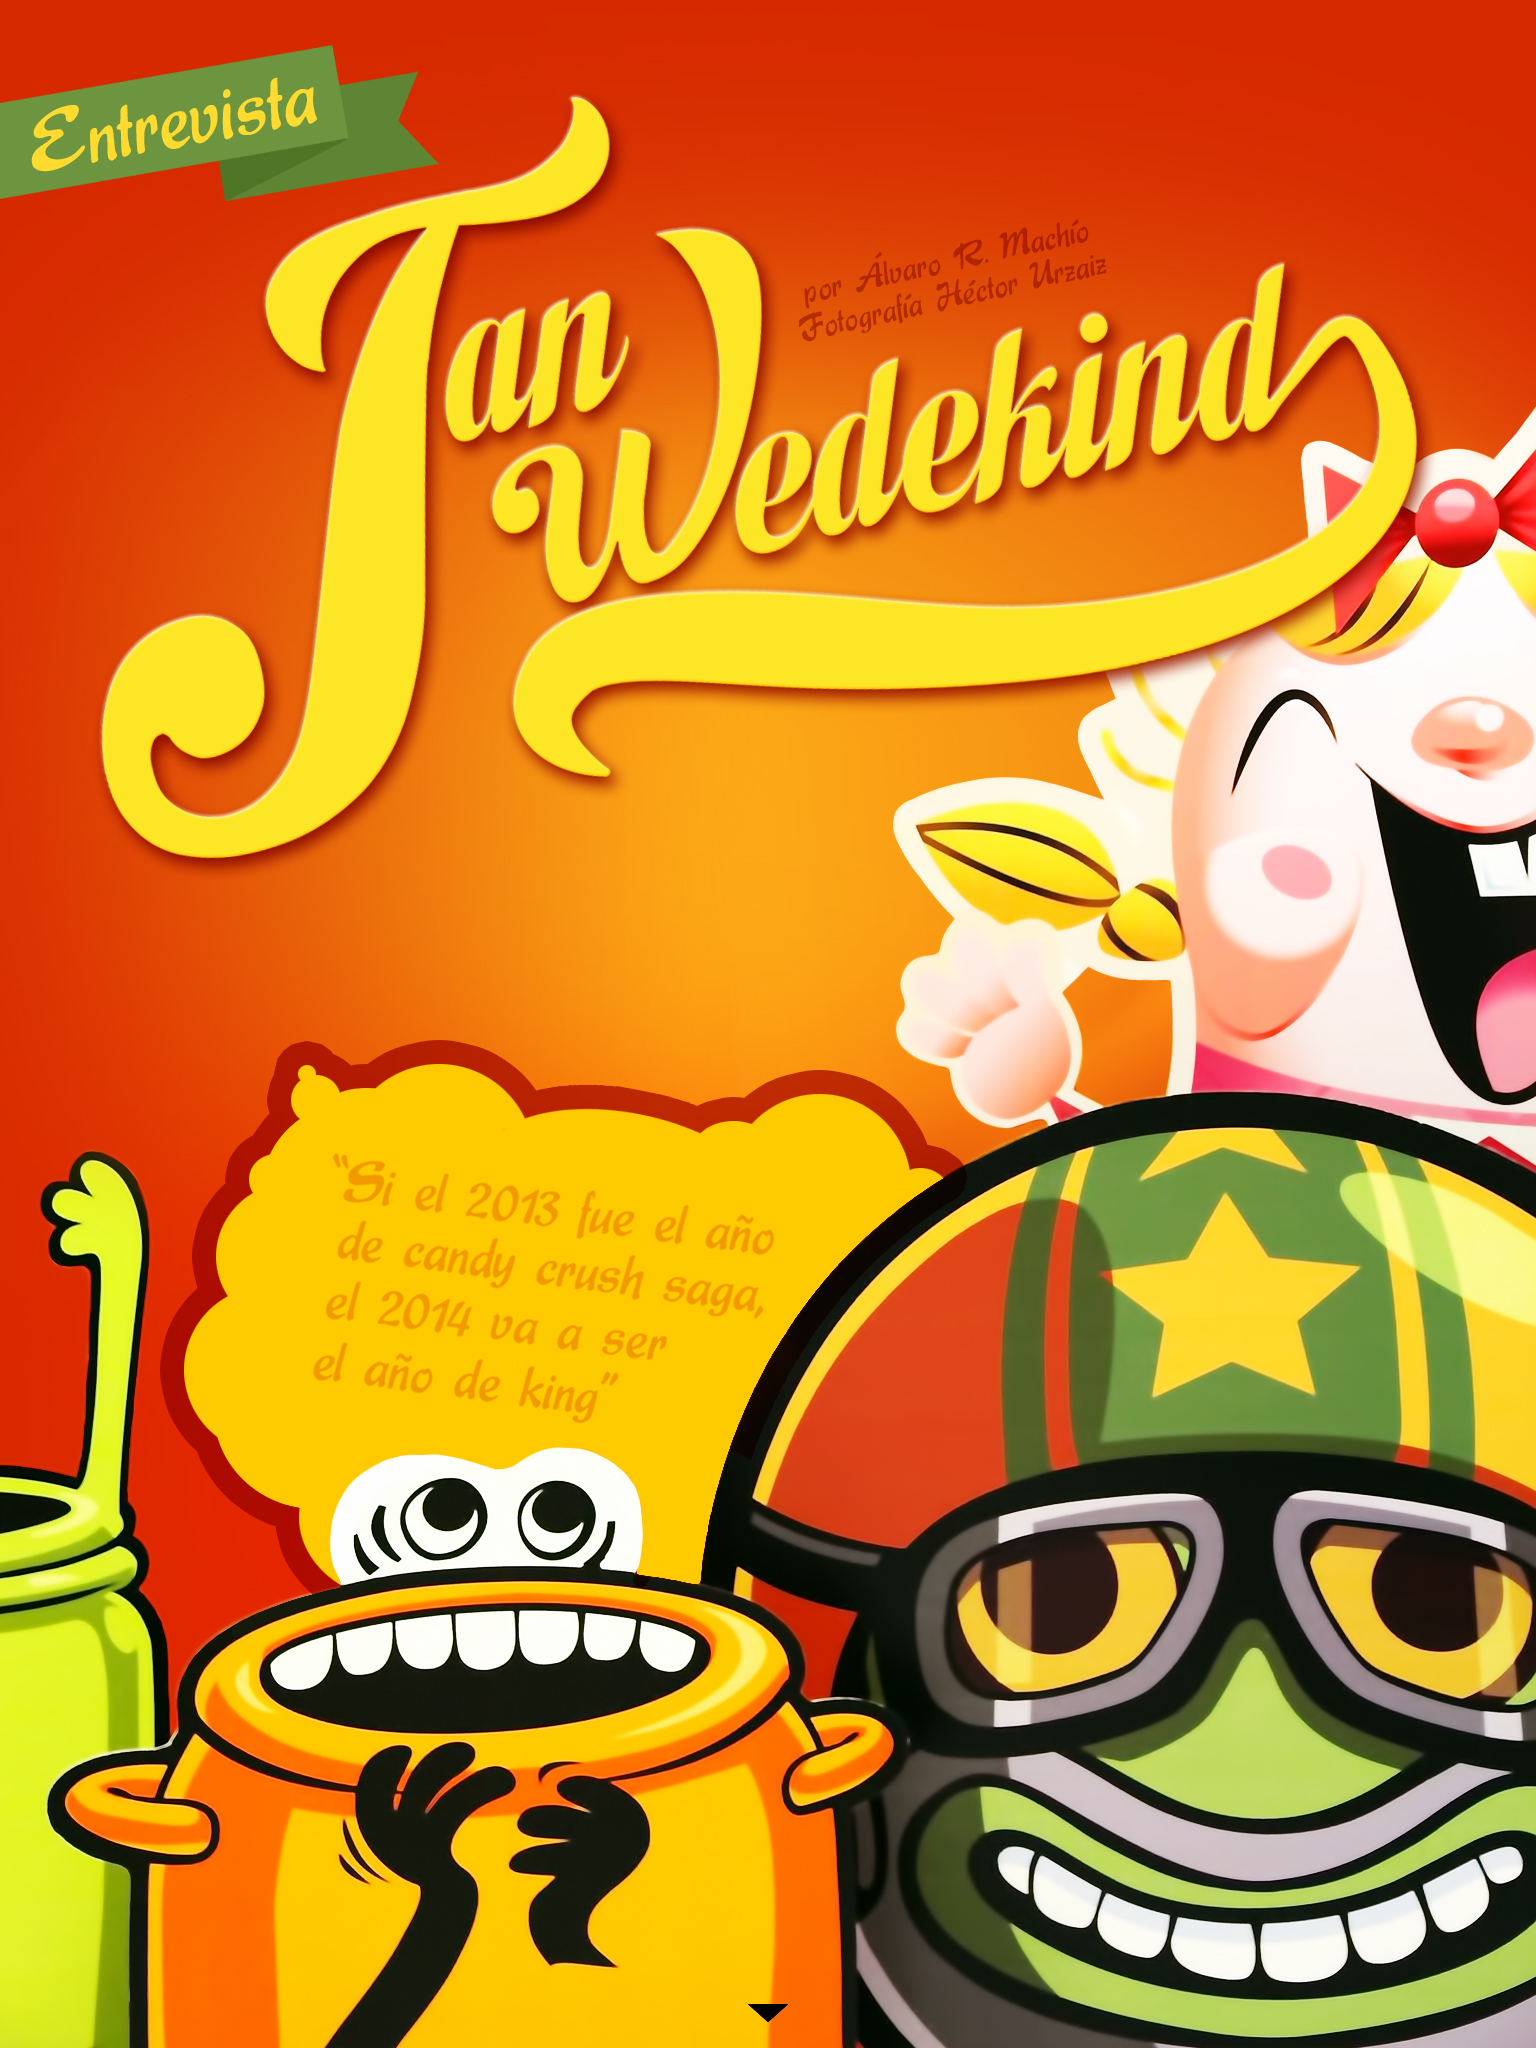 entrevista a Jan Wedekind, de King, creador de Candy Crush Saga